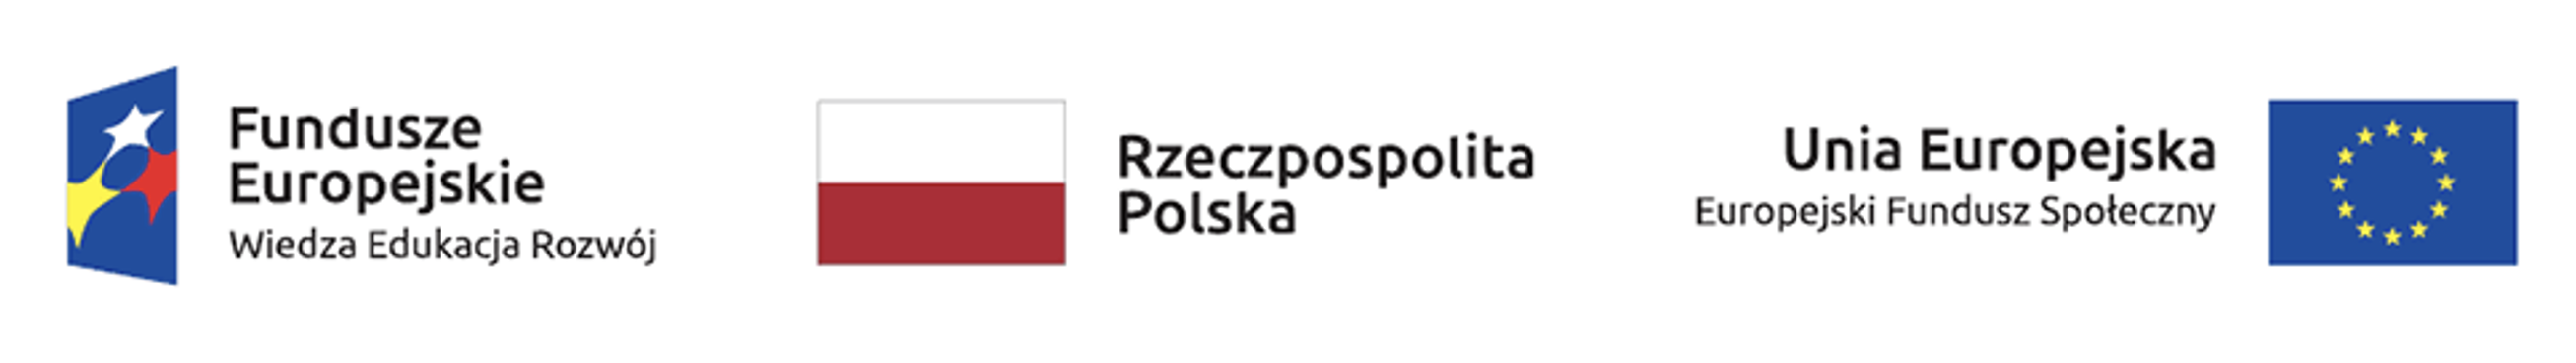 Logo Fundusz Europejskie Wiedza Edukacja Rozwój, flaga Polski, flaga unijna z dopiskiem Europejski Fundusz Społeczny. 